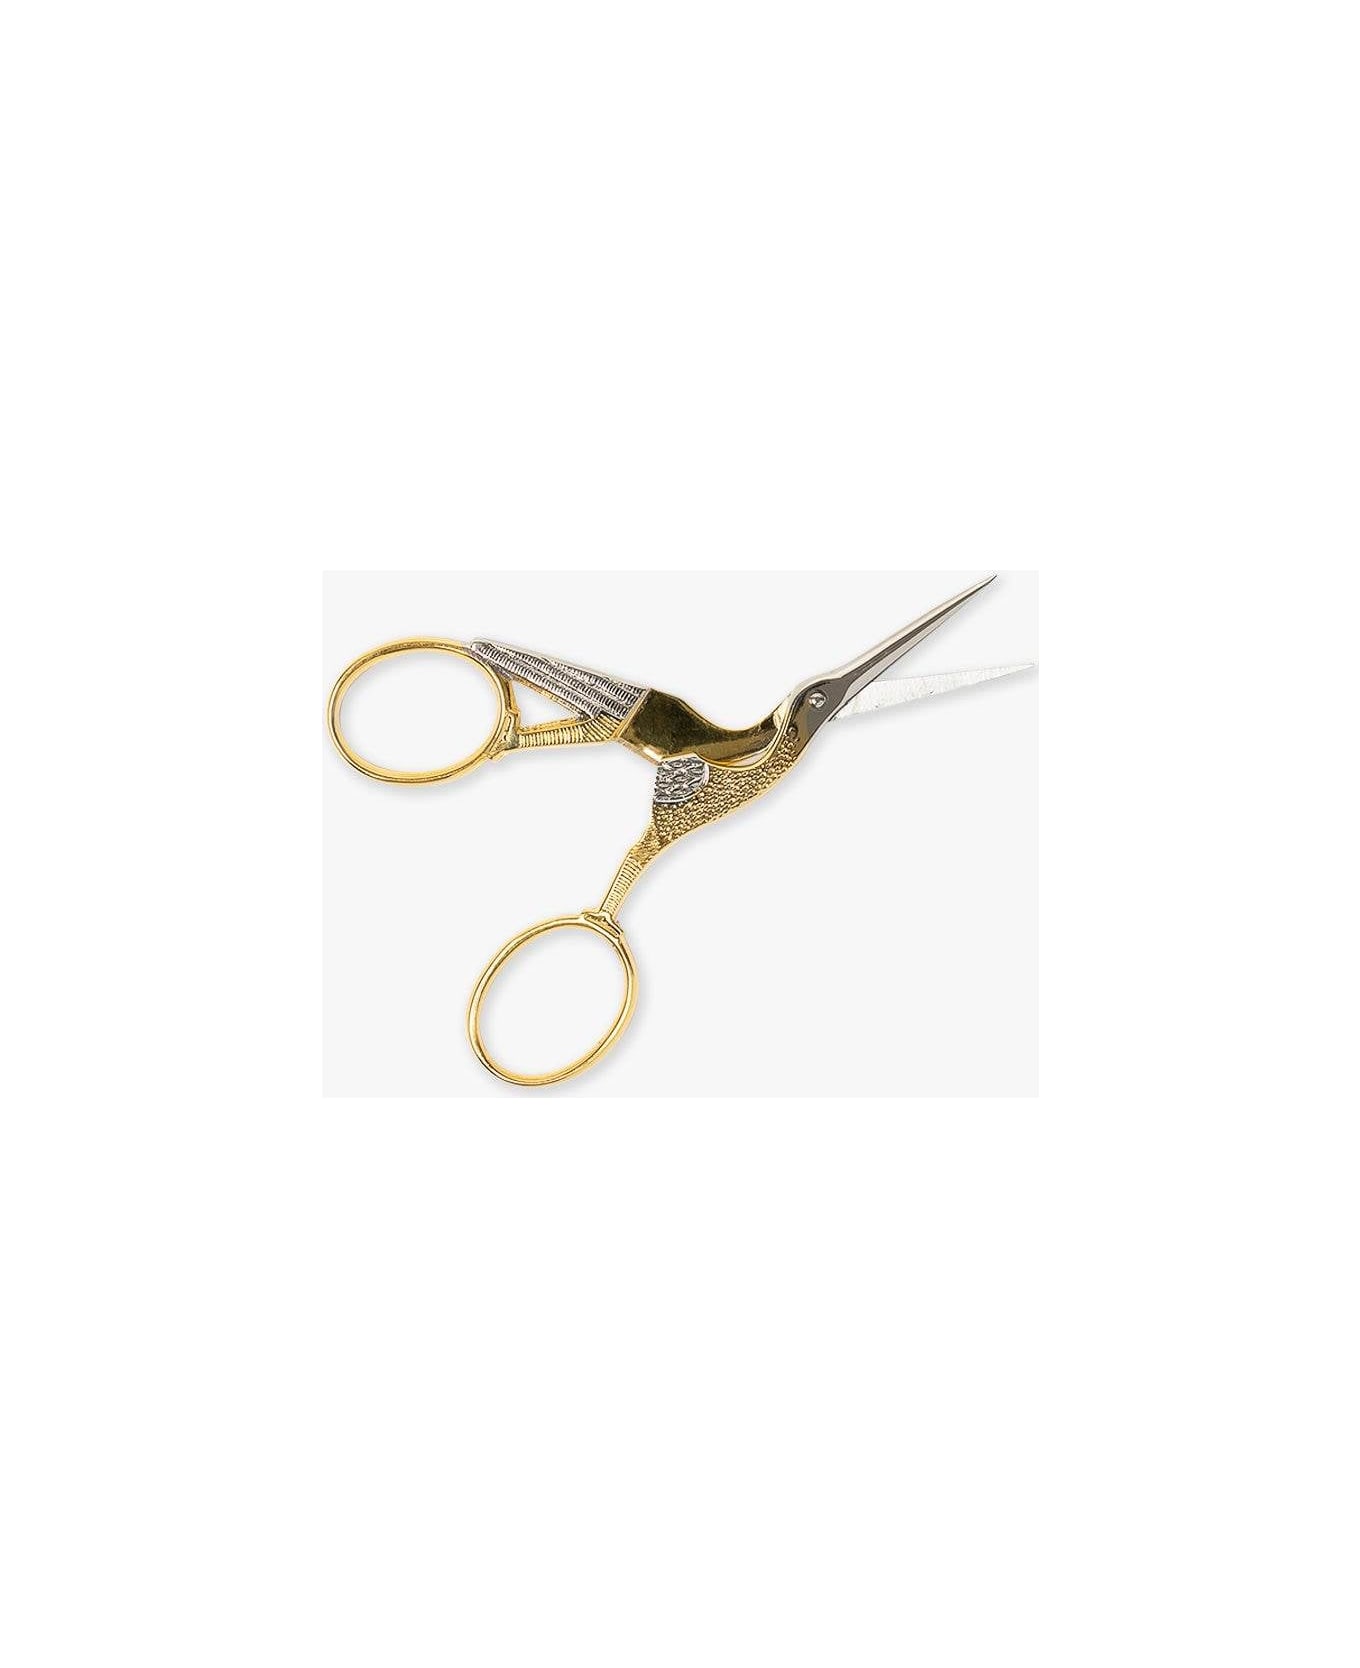 Larusmiani Sewing Scissors Beauty - Neutral